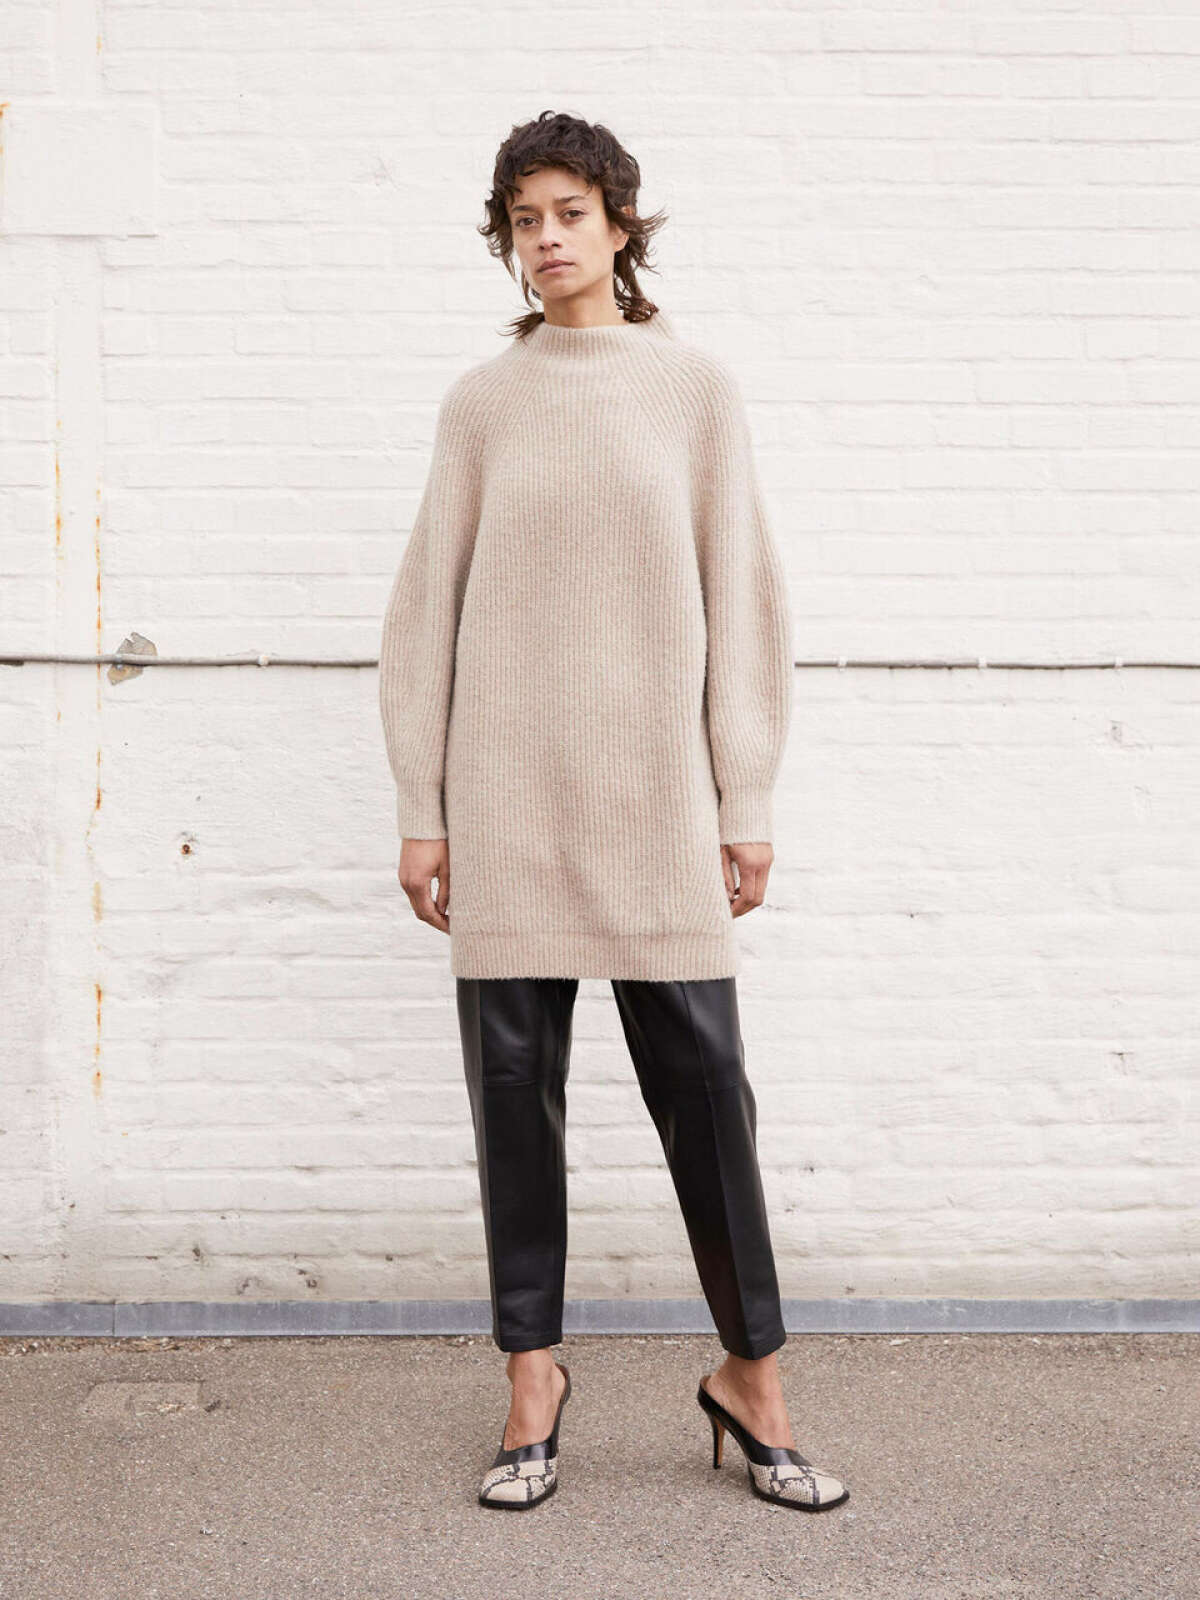 Birger | Calea striksweater | Shop